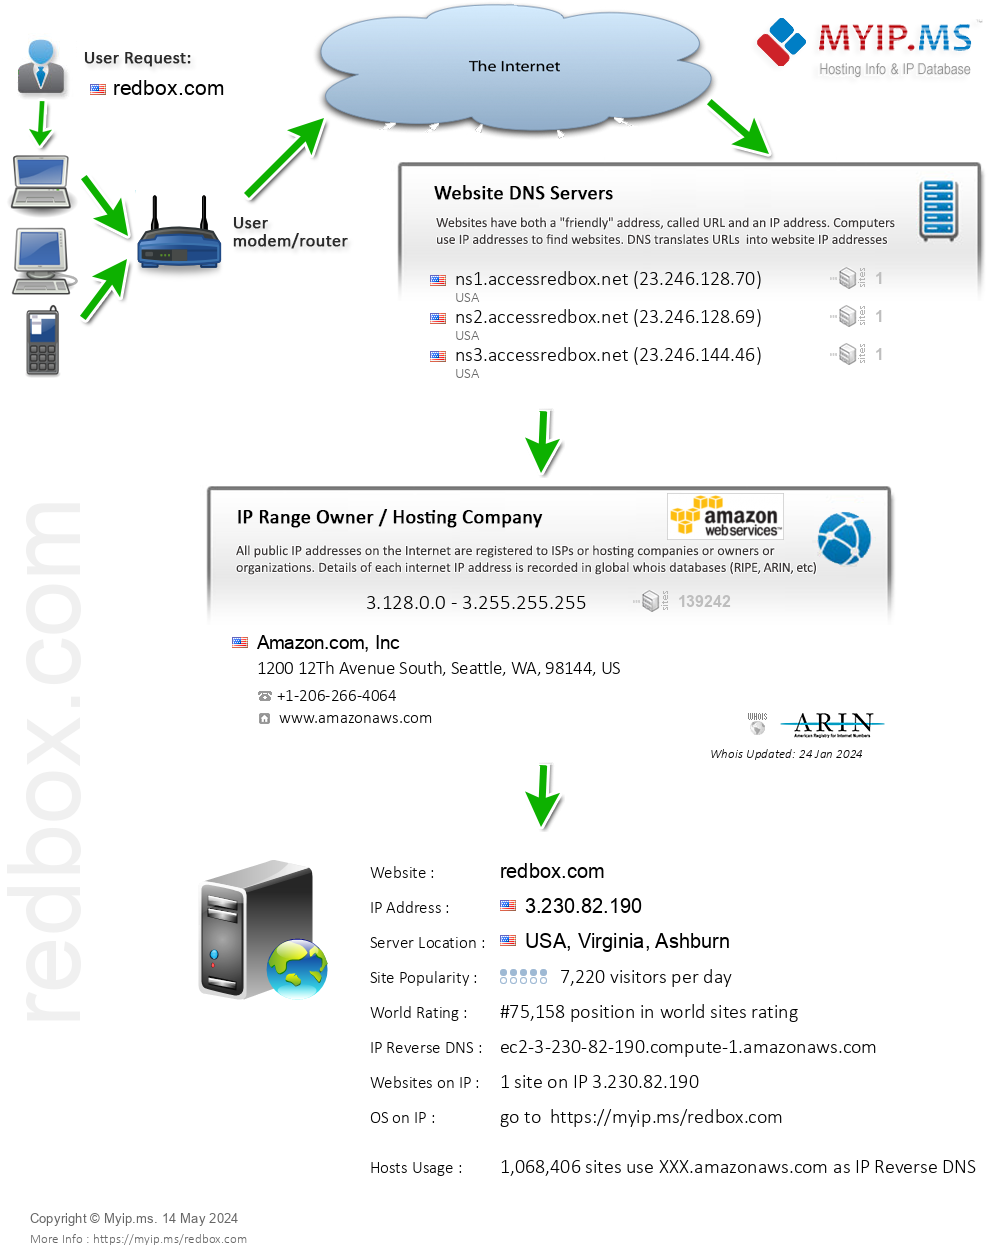 Redbox.com - Website Hosting Visual IP Diagram